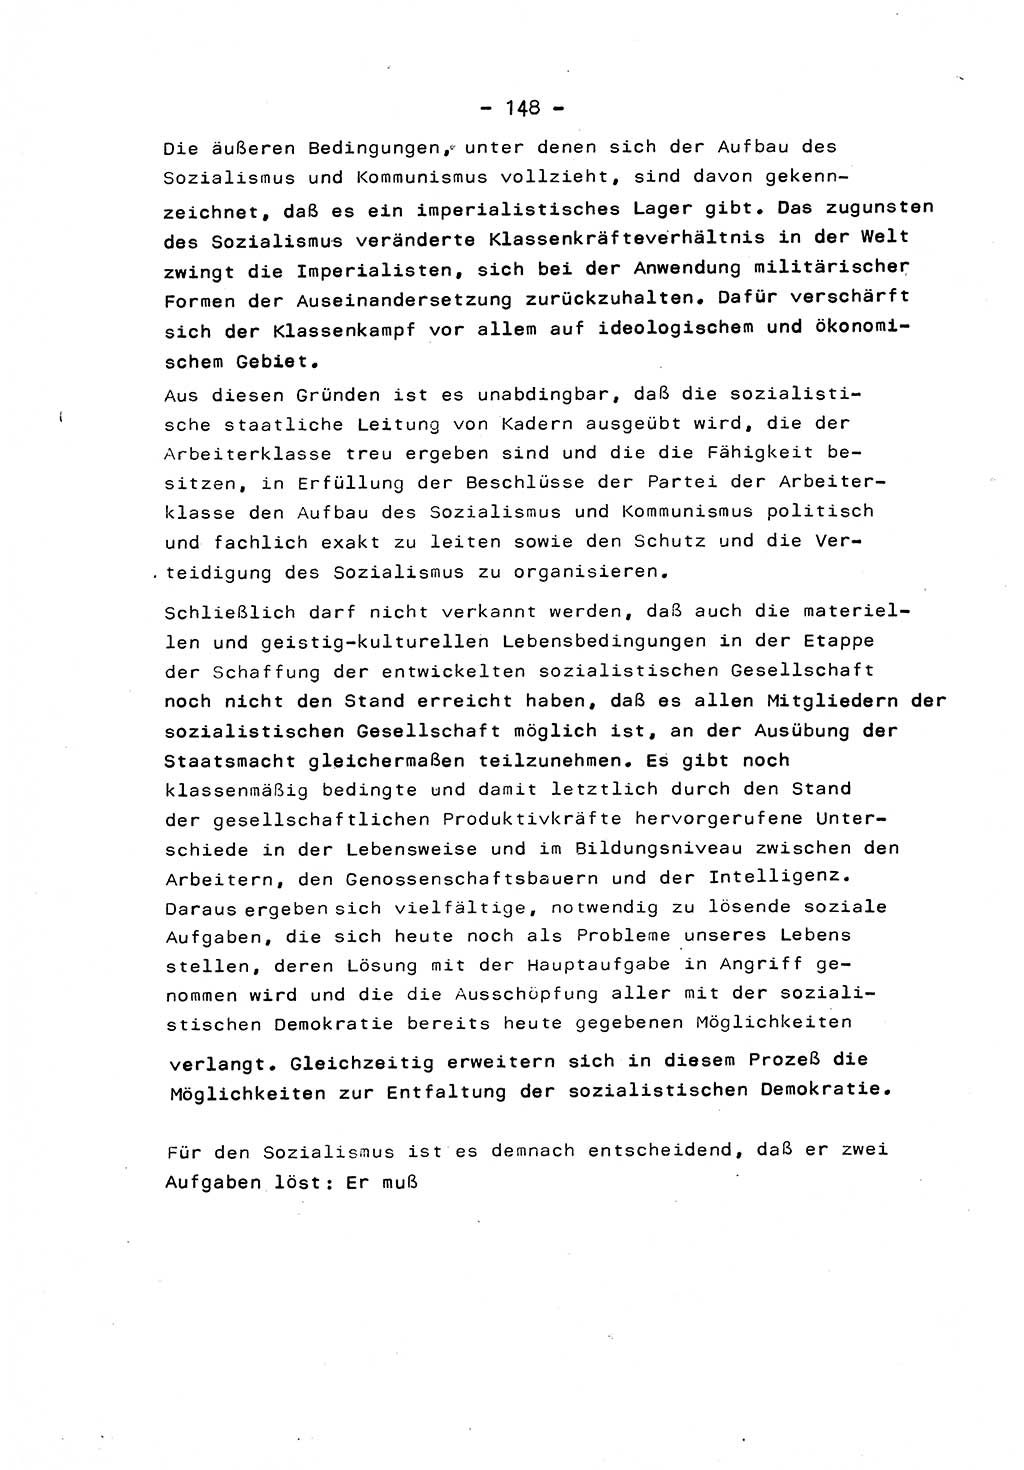 Marxistisch-leninistische Staats- und Rechtstheorie [Deutsche Demokratische Republik (DDR)] 1975, Seite 148 (ML St.-R.-Th. DDR 1975, S. 148)